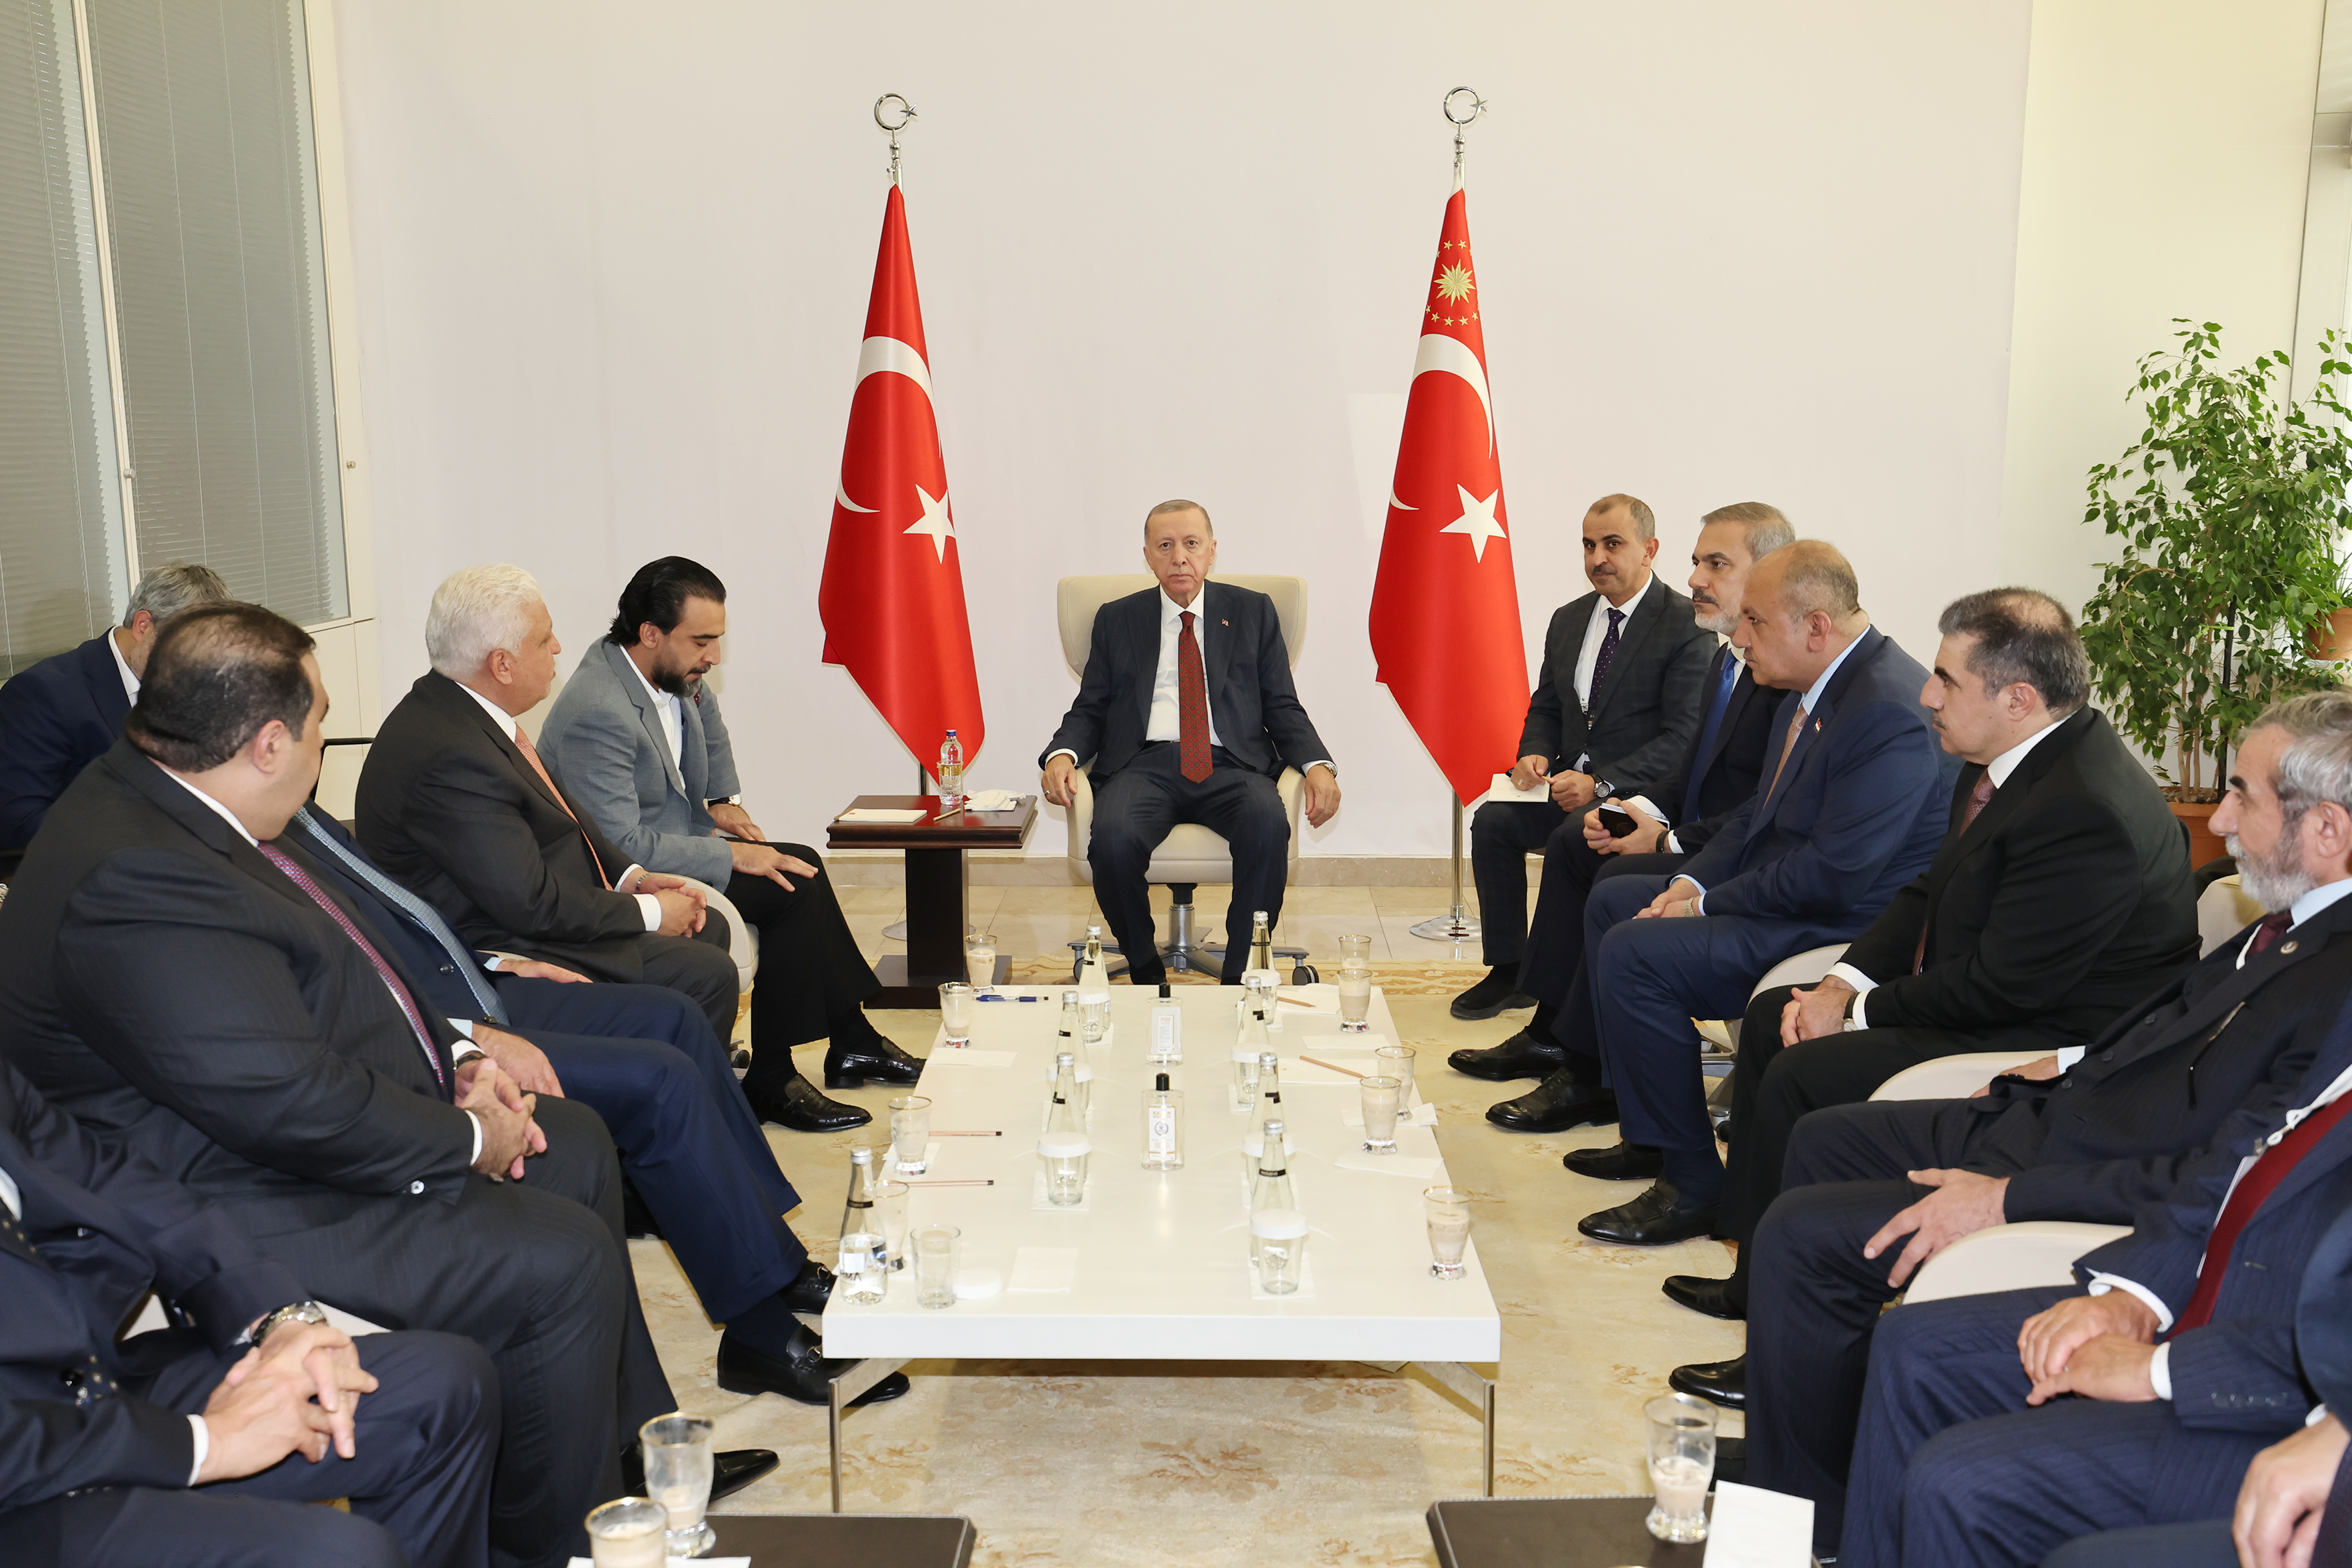 مسارات العلاقات التركية- العراقية: آفاق جديدة في مواجهة معوّقات قديمة